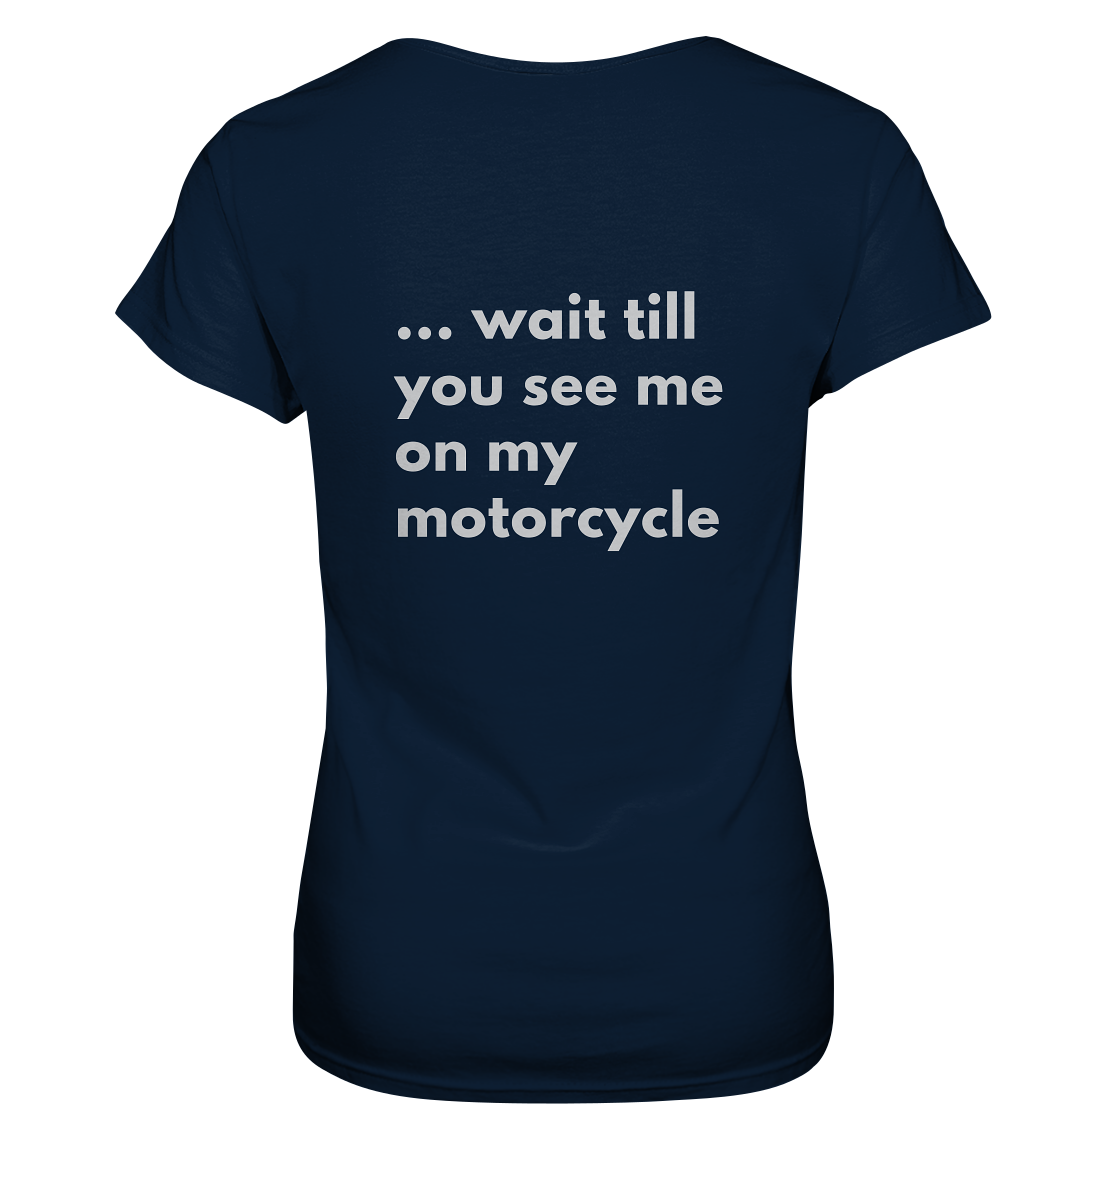 Damen-Motorrad-T-Shirt / Ladies Motorcycle Shirt, white funny print front _ mit witzigem weißem Aufdruck vorn: "If you think I'm sexy now ...", hinten / back: "... wait till you see me on my motorcycle", Rundhals, dunkelblau/ dark blue